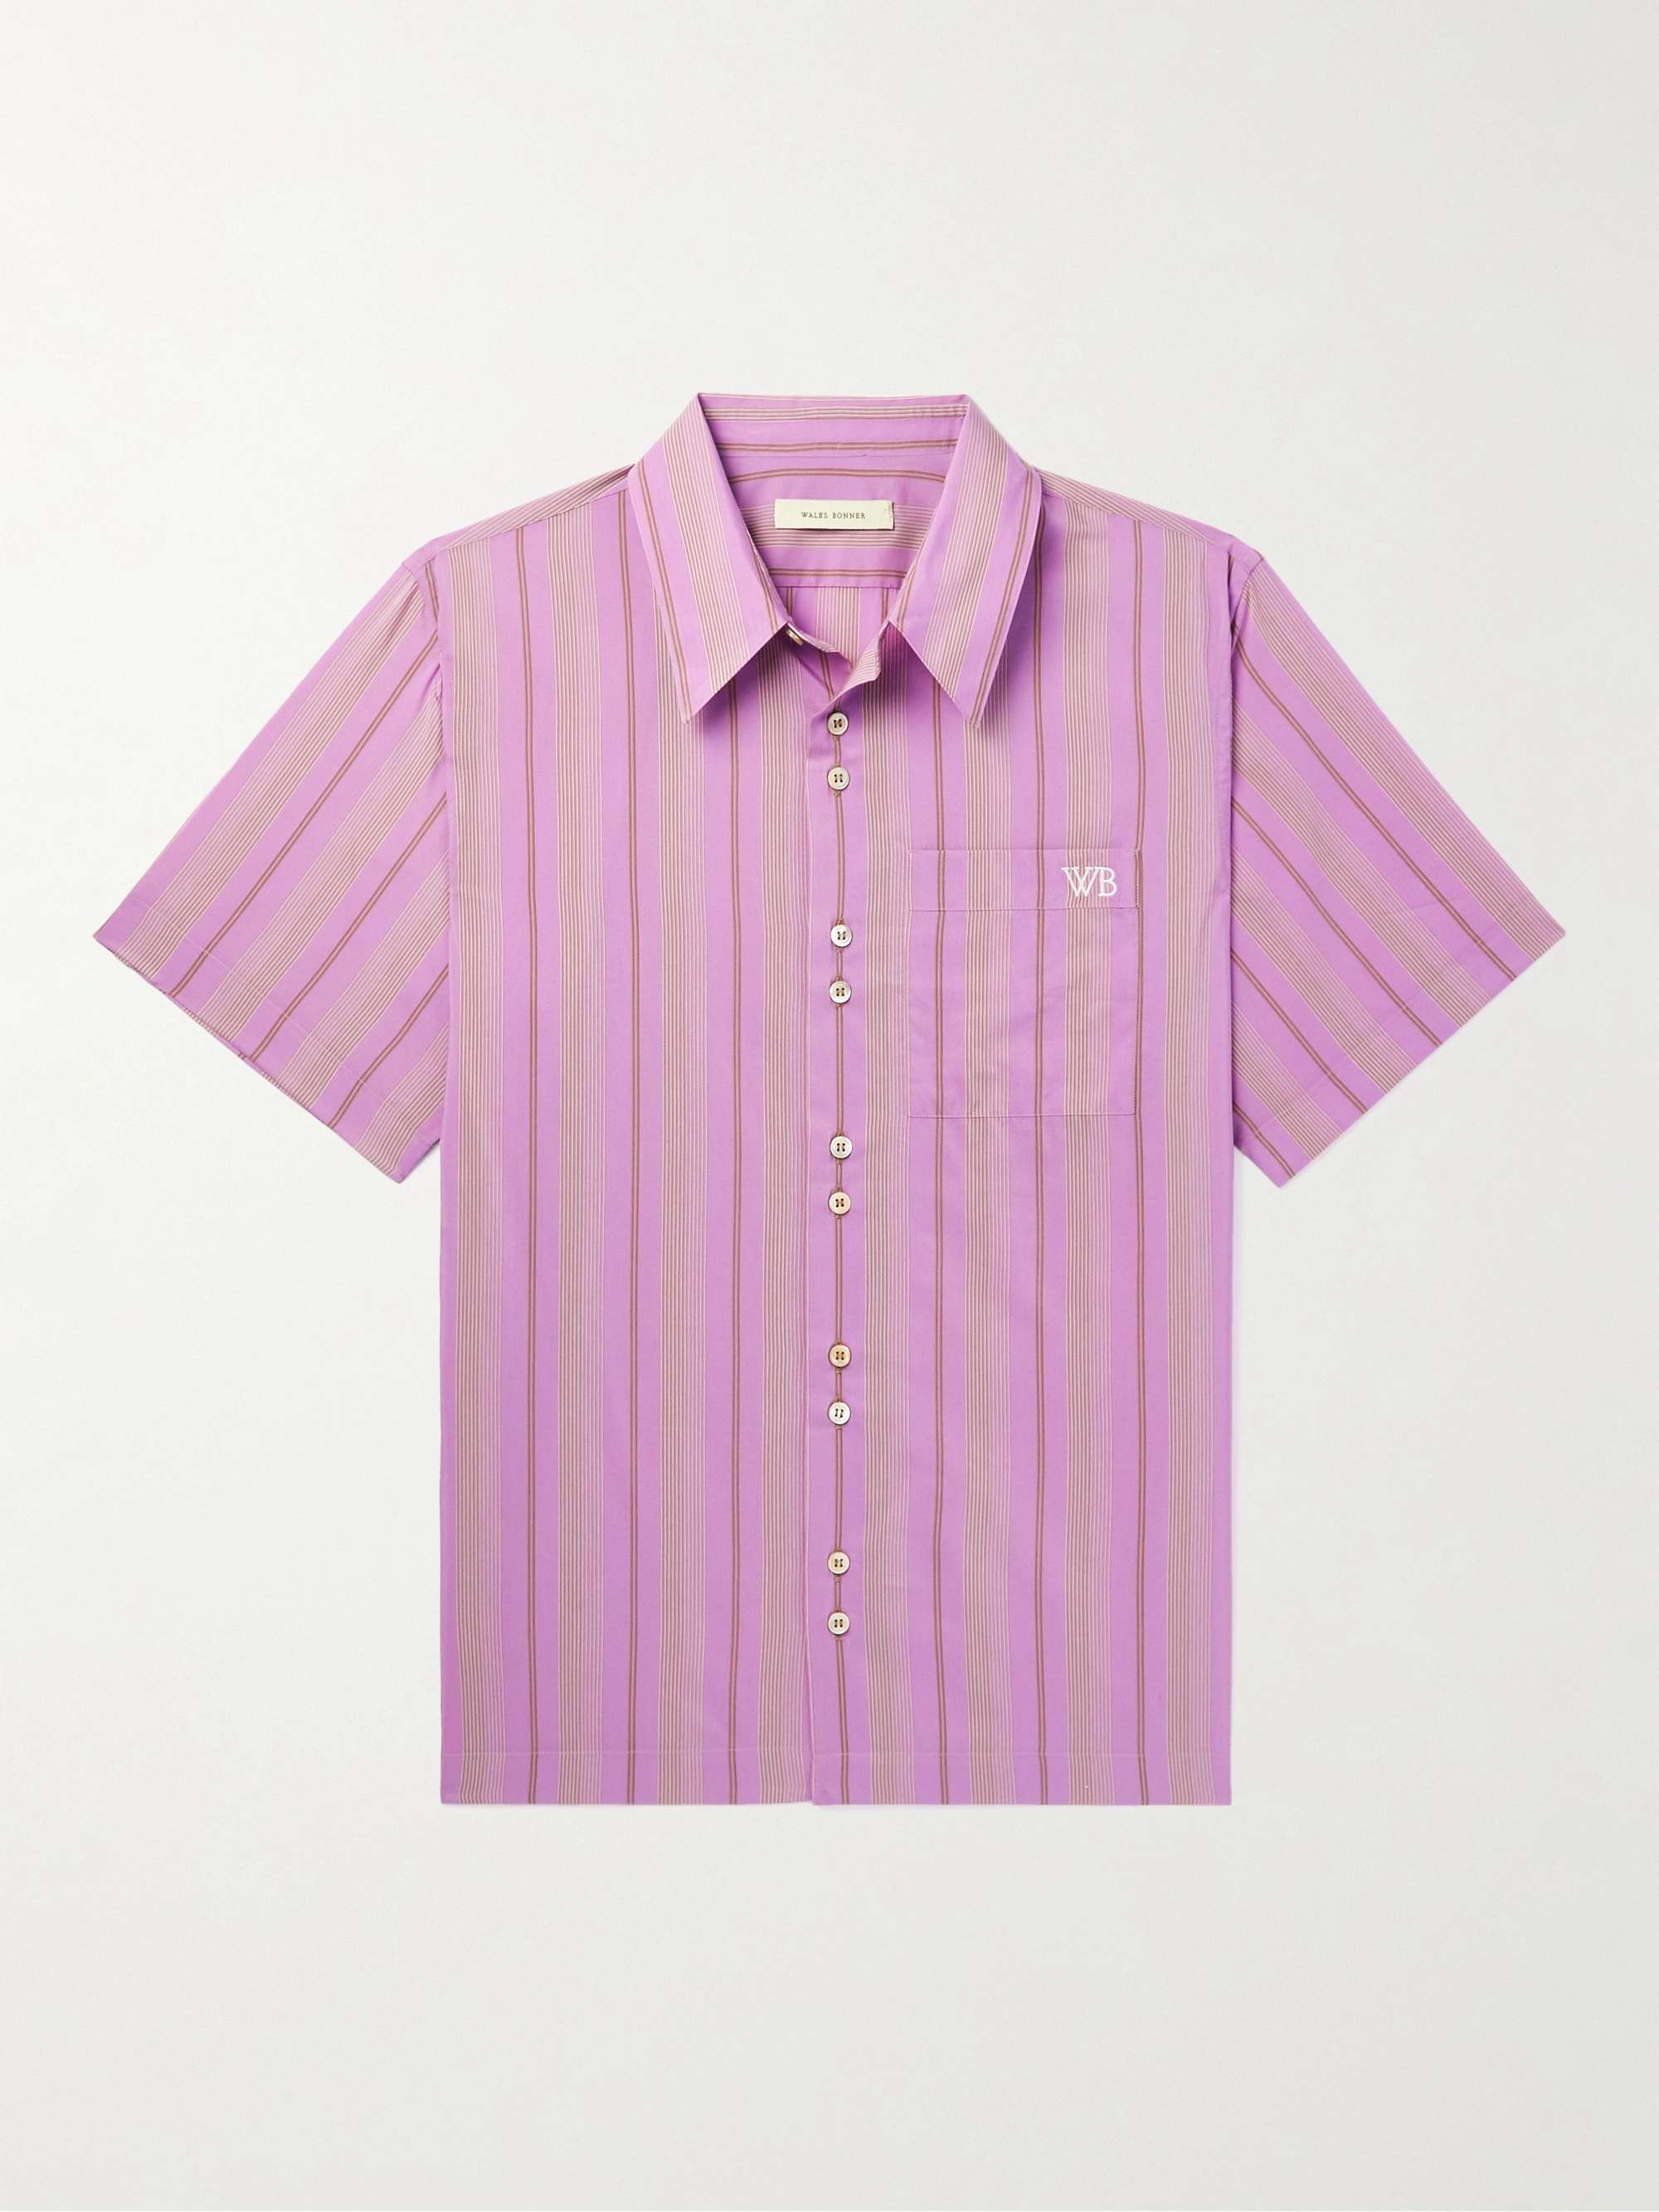 WALES BONNER Stripe Rhythm Striped Cotton-Blend Shirt | MR